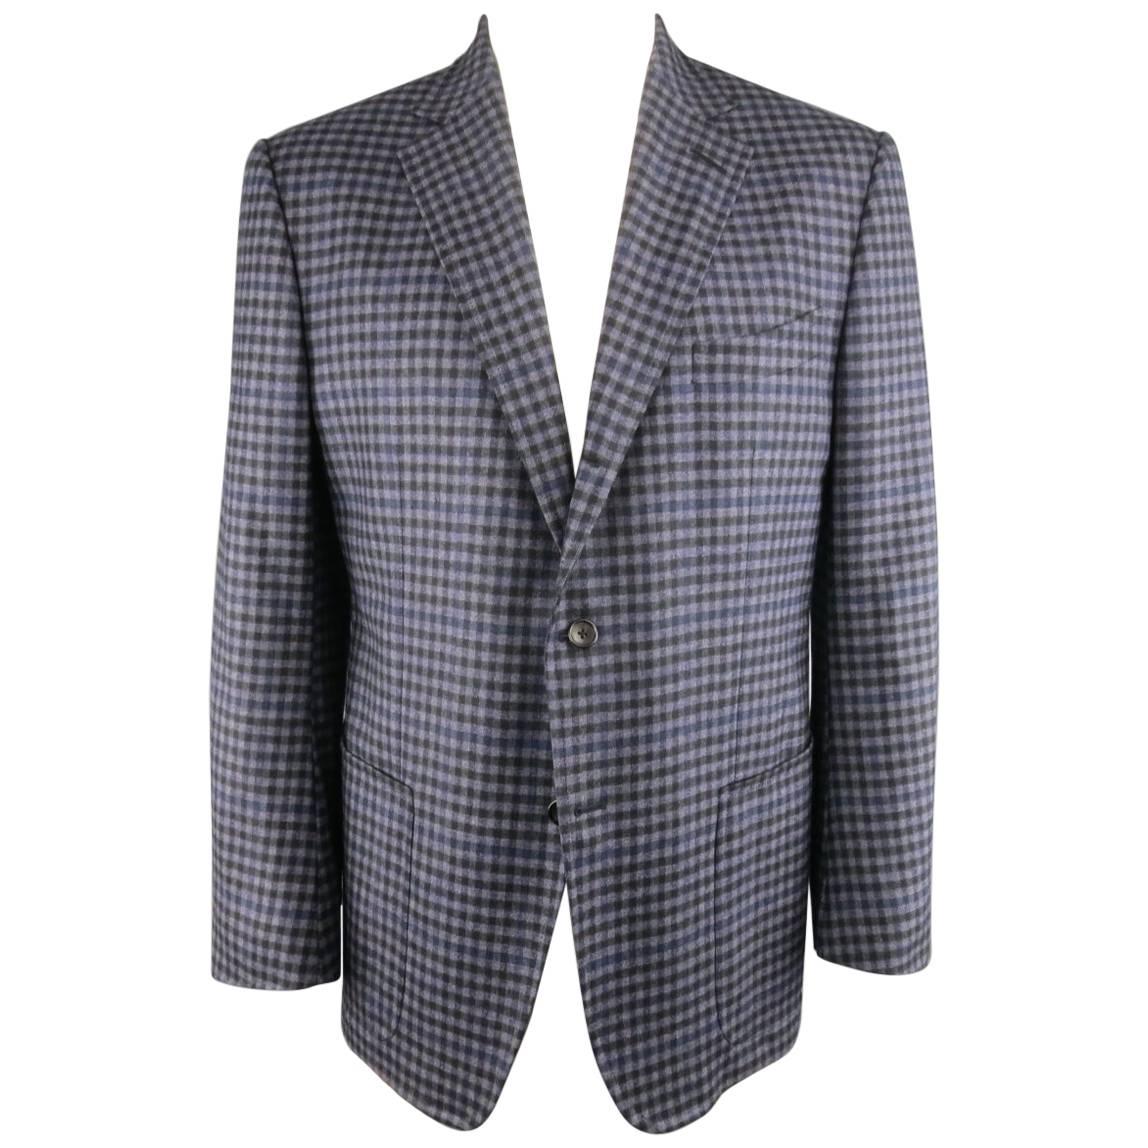 TOM FORD Sport Coat 48R Purple Check Plaid Wool Jacket / Blazer